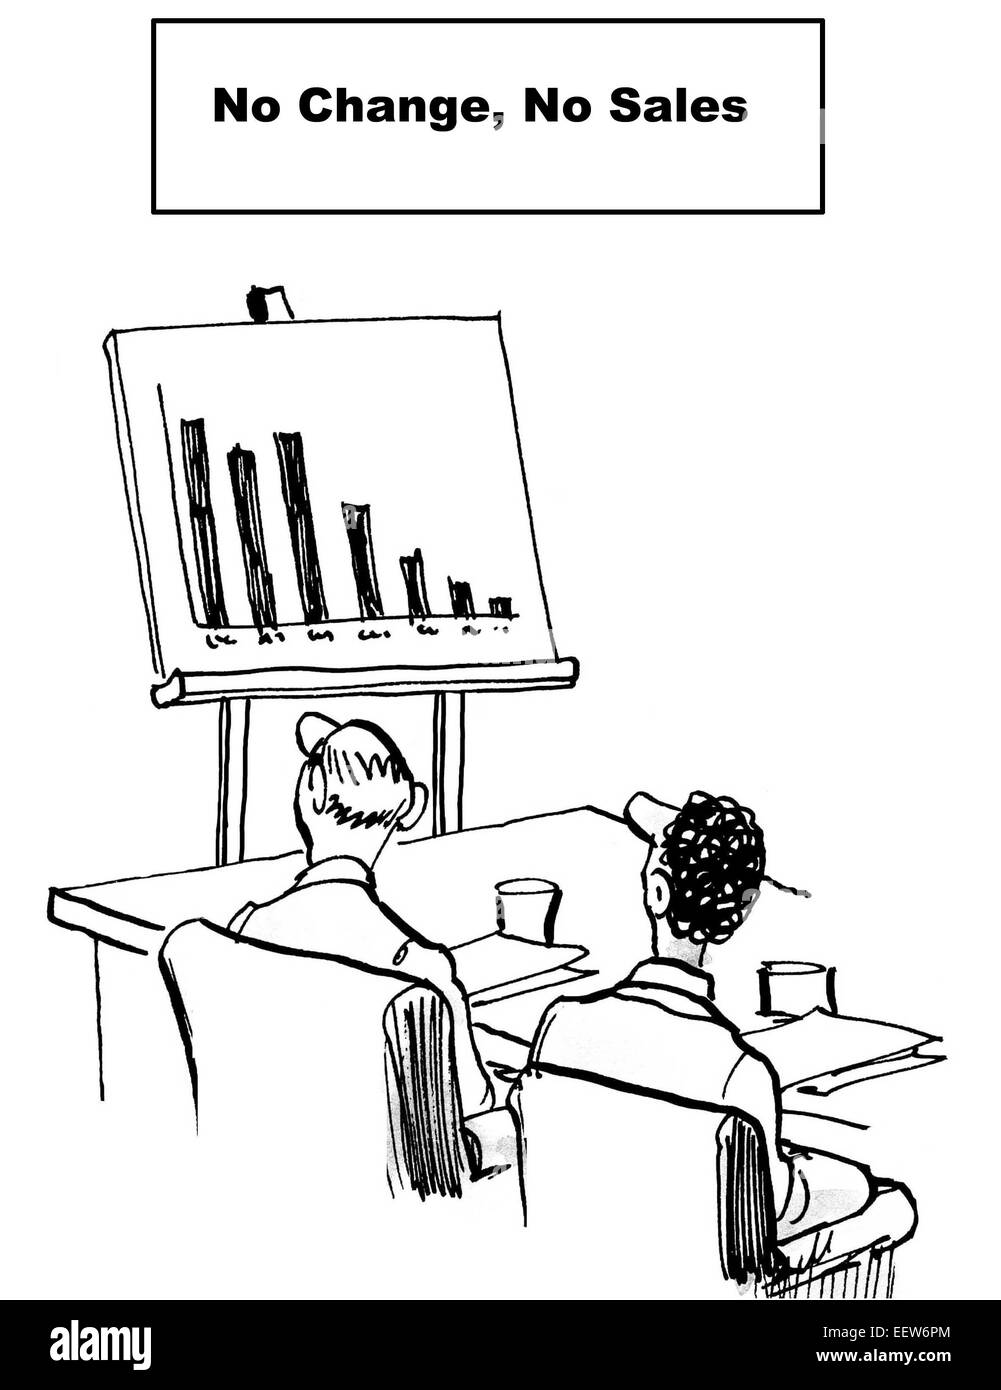 Cartoon von zwei Geschäftsleute Blick auf rückläufige Umsätze in einem Diagramm--keine Veränderung, kein Verkauf. Stockfoto